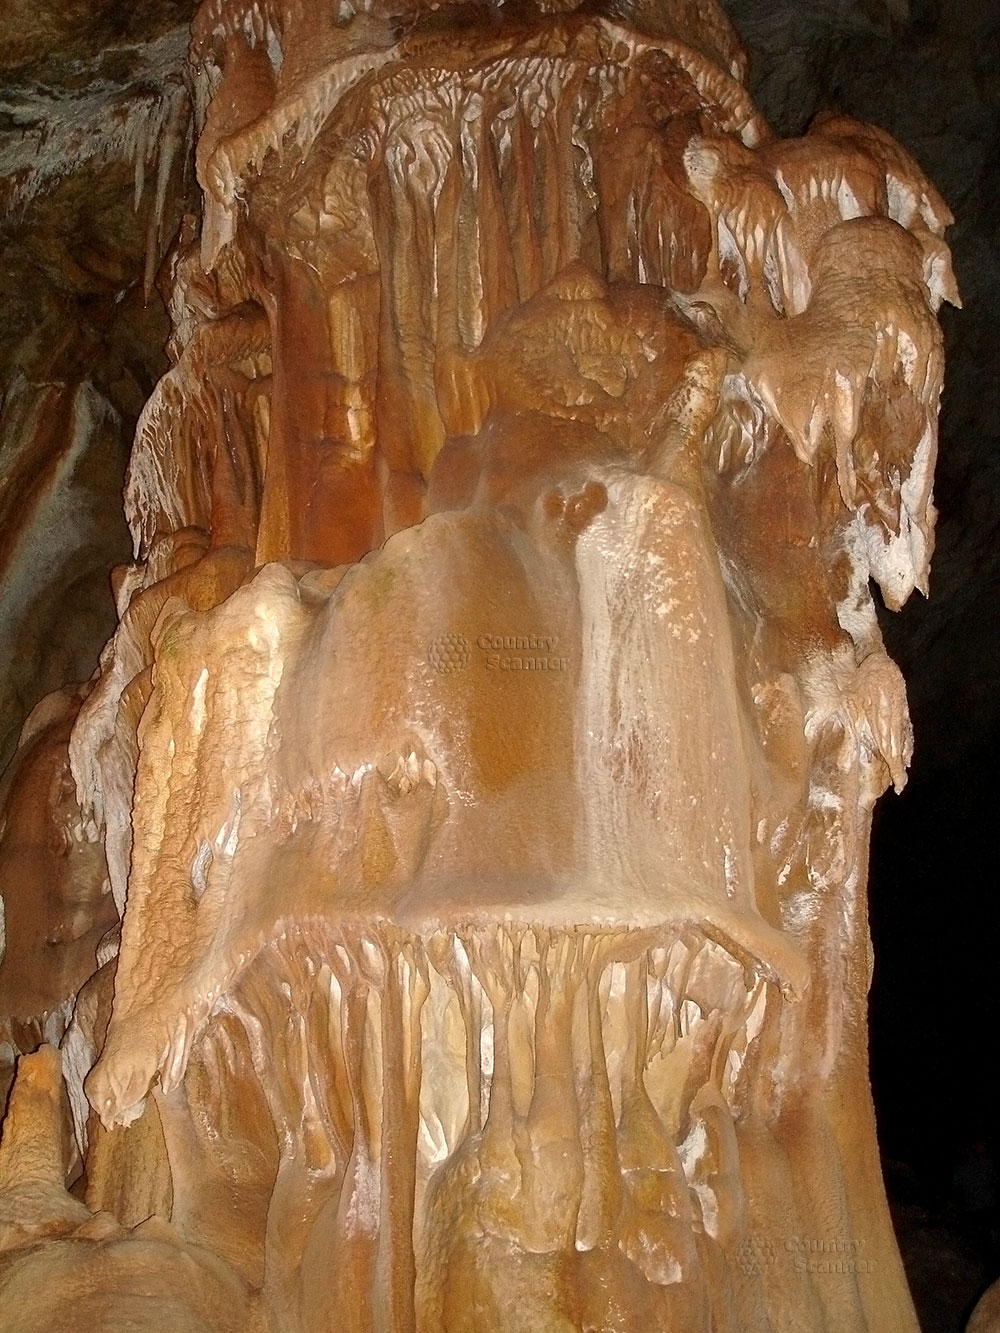 Мраморная пещера. "Столб"